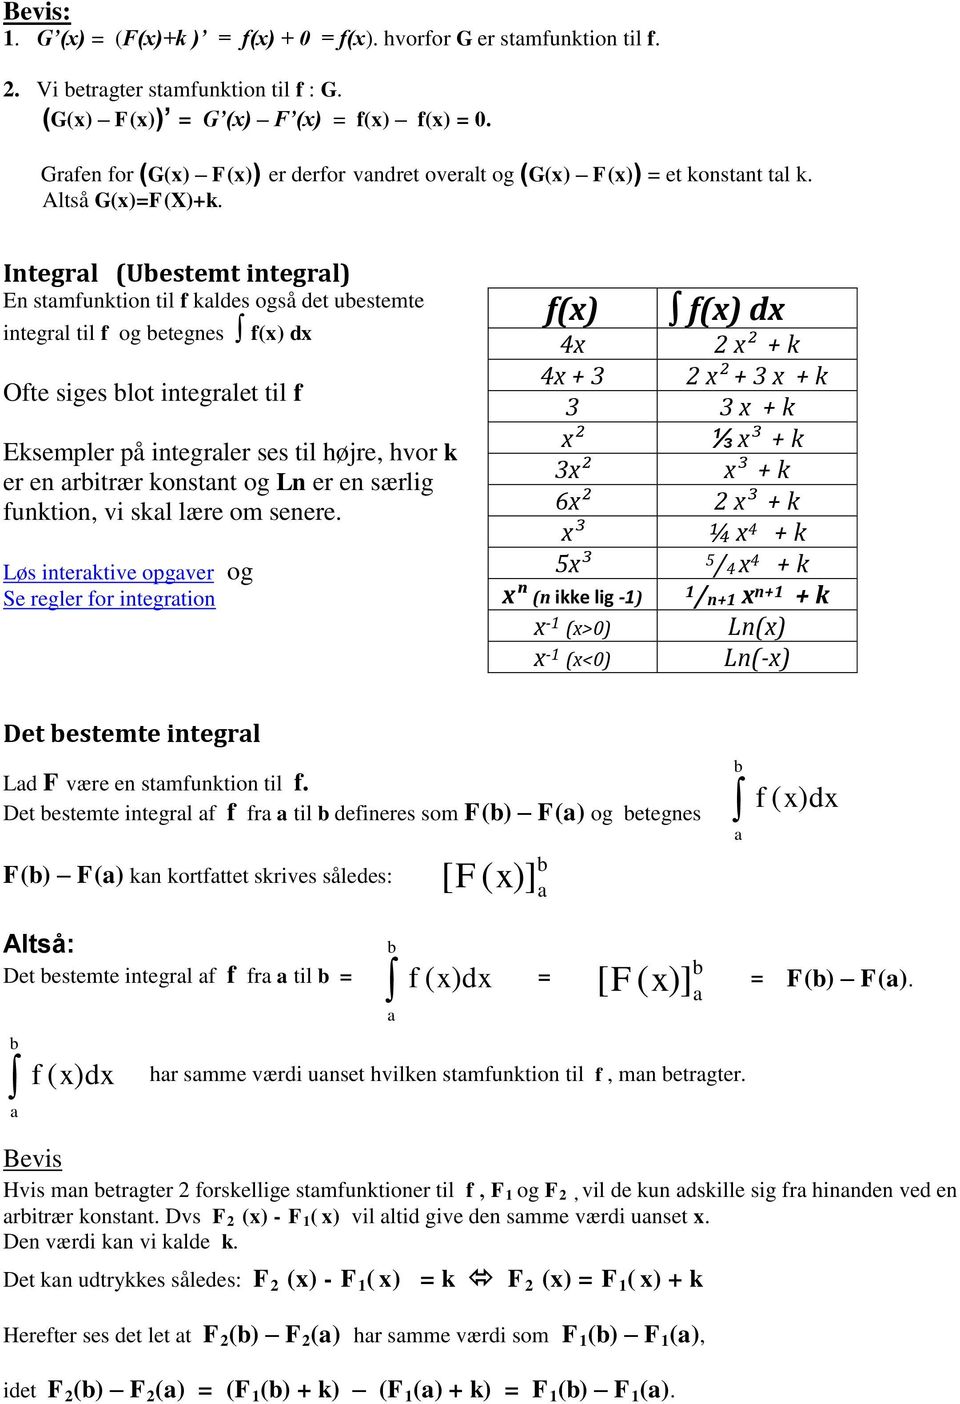 Integrl (Uestemt integrl) En stmfunktion til f kldes også det uestemte integrl til f og etegnes f(x) Ofte siges lot integrlet til f Eksempler på integrler ses til højre, hvor k er en ritrær konstnt